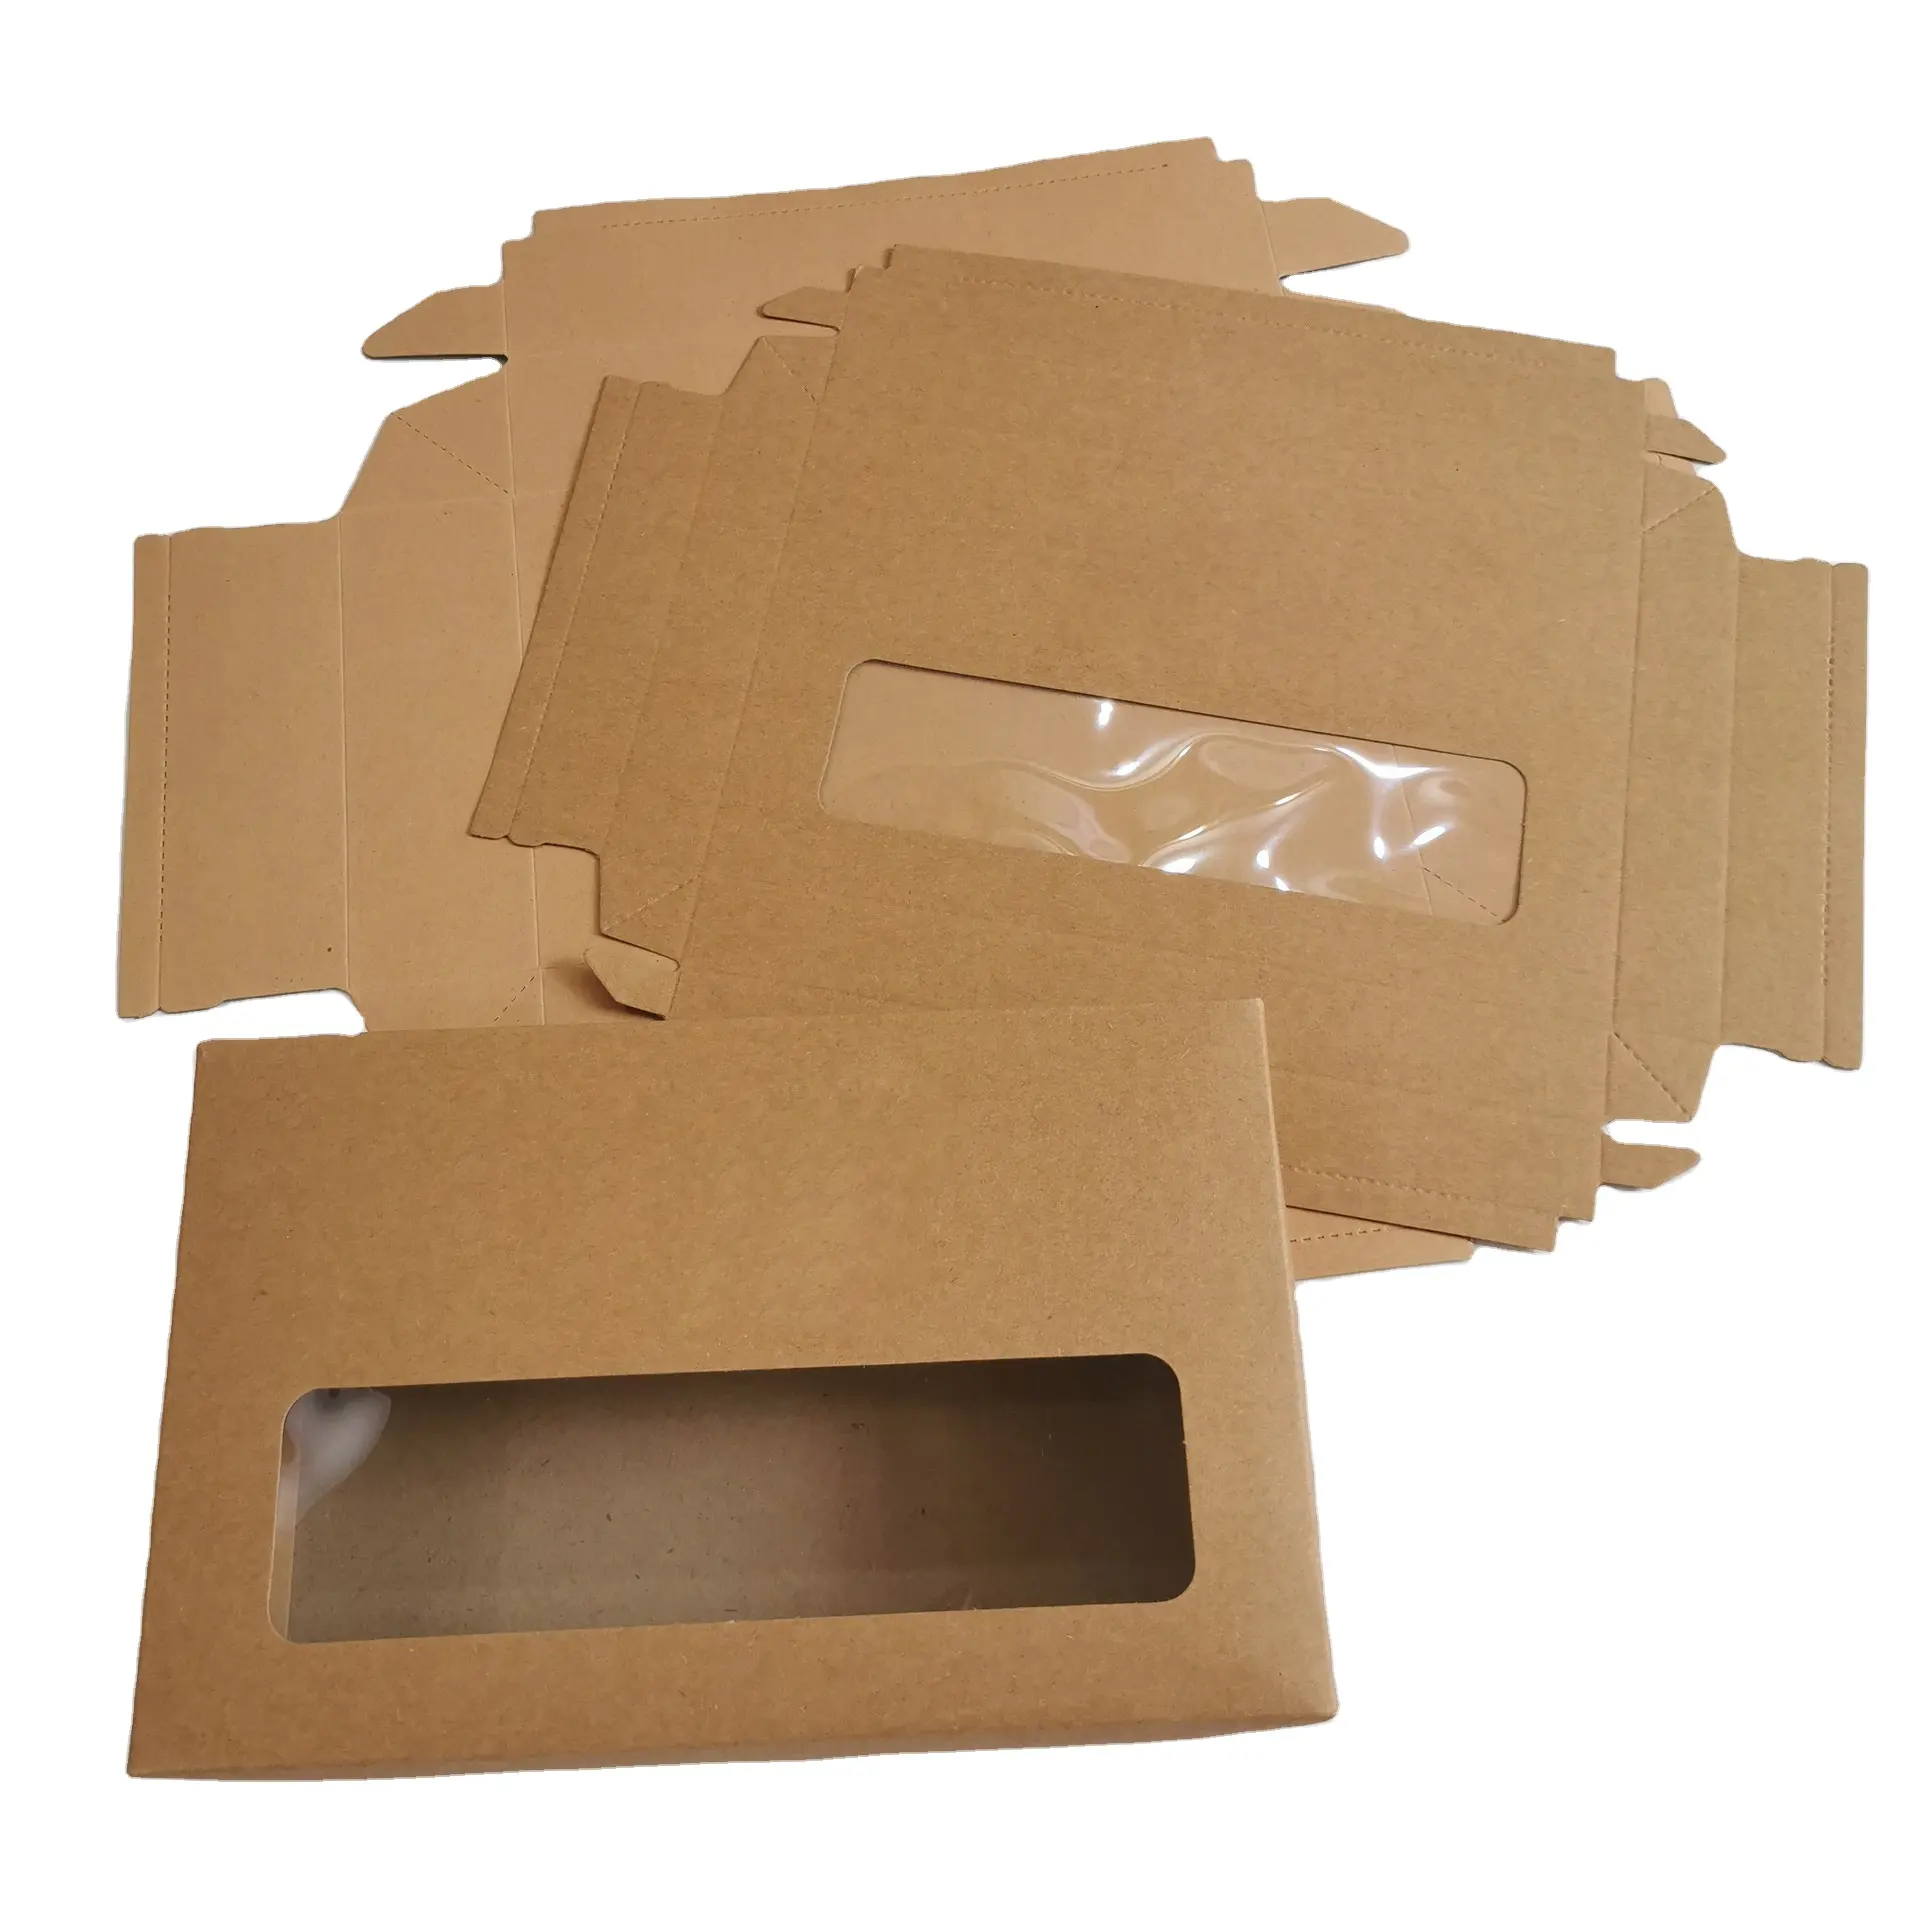 Stokta çekmece kaliteli Kraft kağıt katlama hediye evrensel paket iç çamaşırı çorap ambalaj kutusu